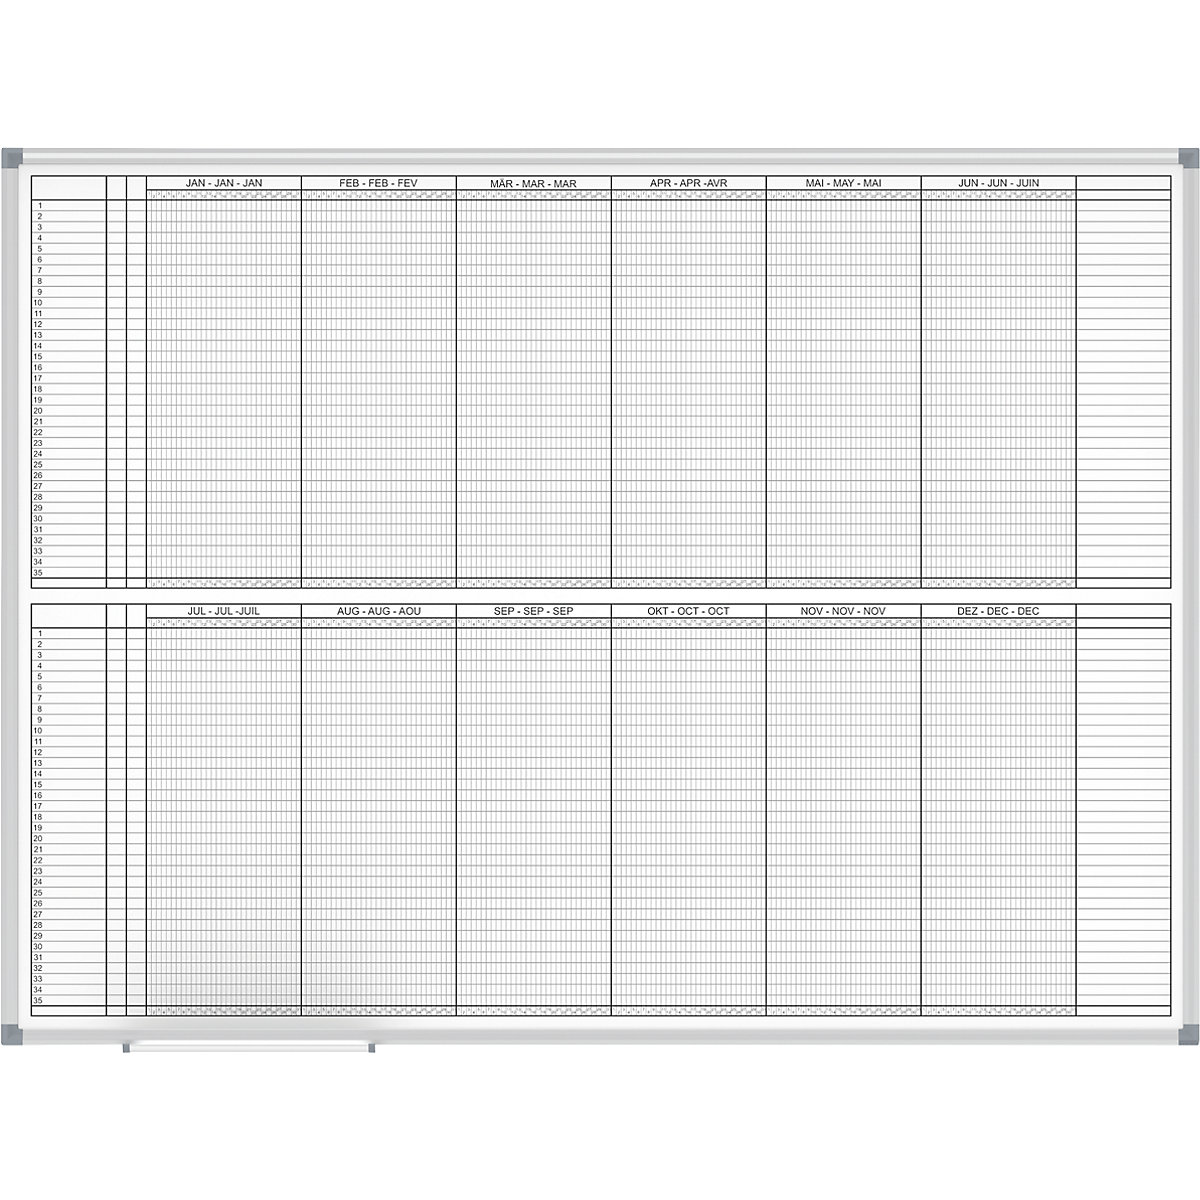 Planbord – MAUL, jaarplanner, weergave 2 x 6 maanden, breedte 1200 mm